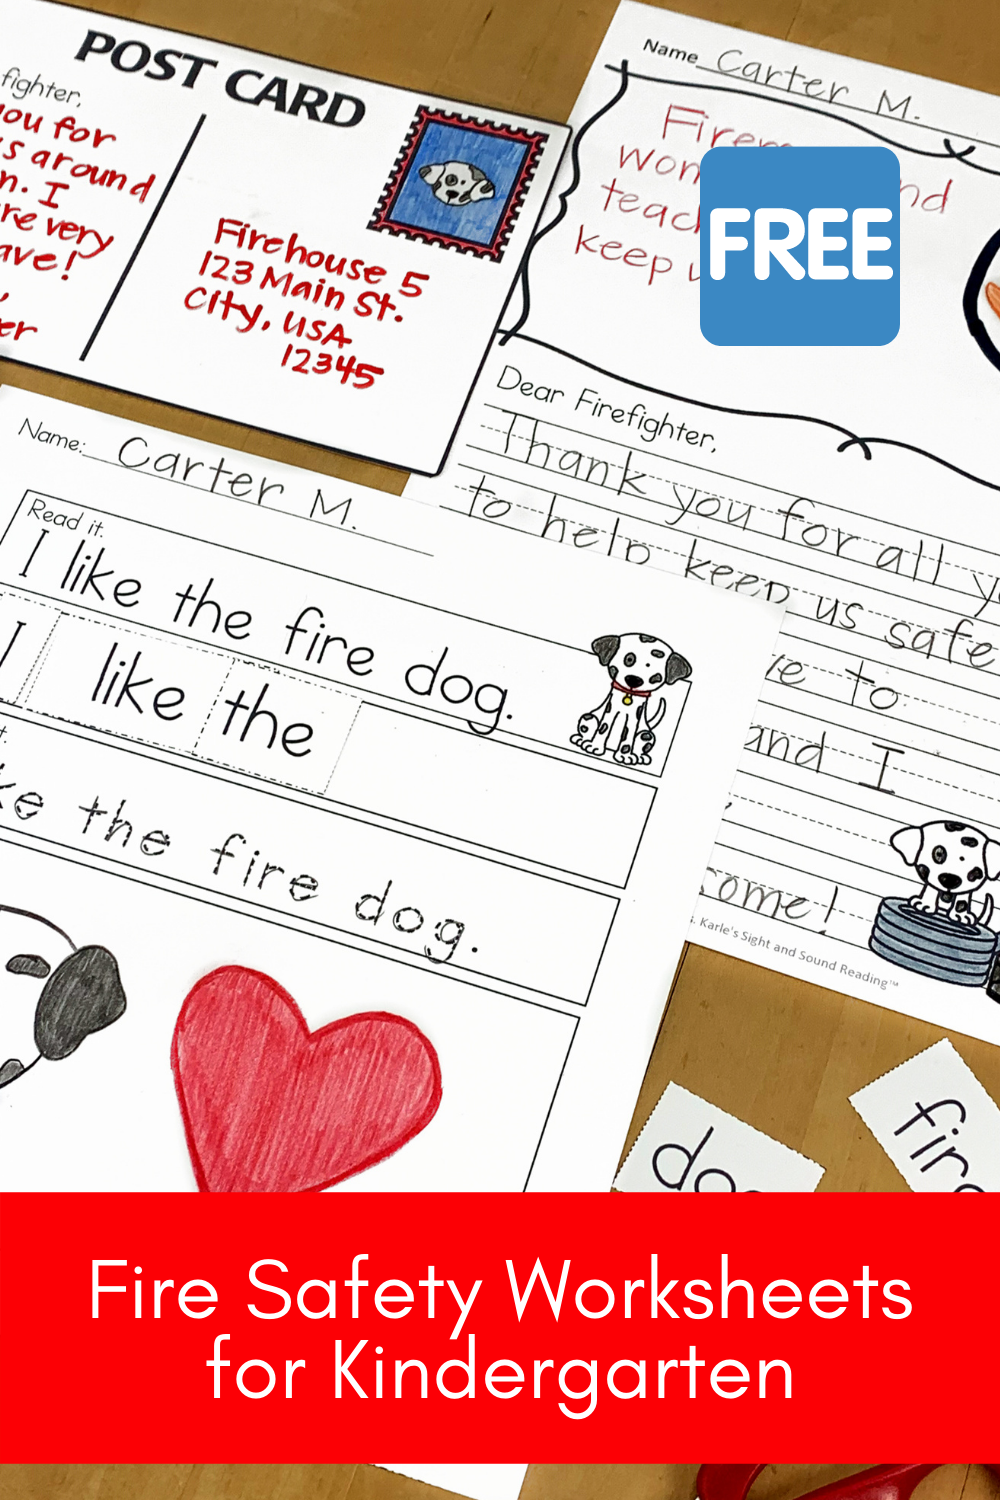 Fire Safety worksheets for Kindergarten